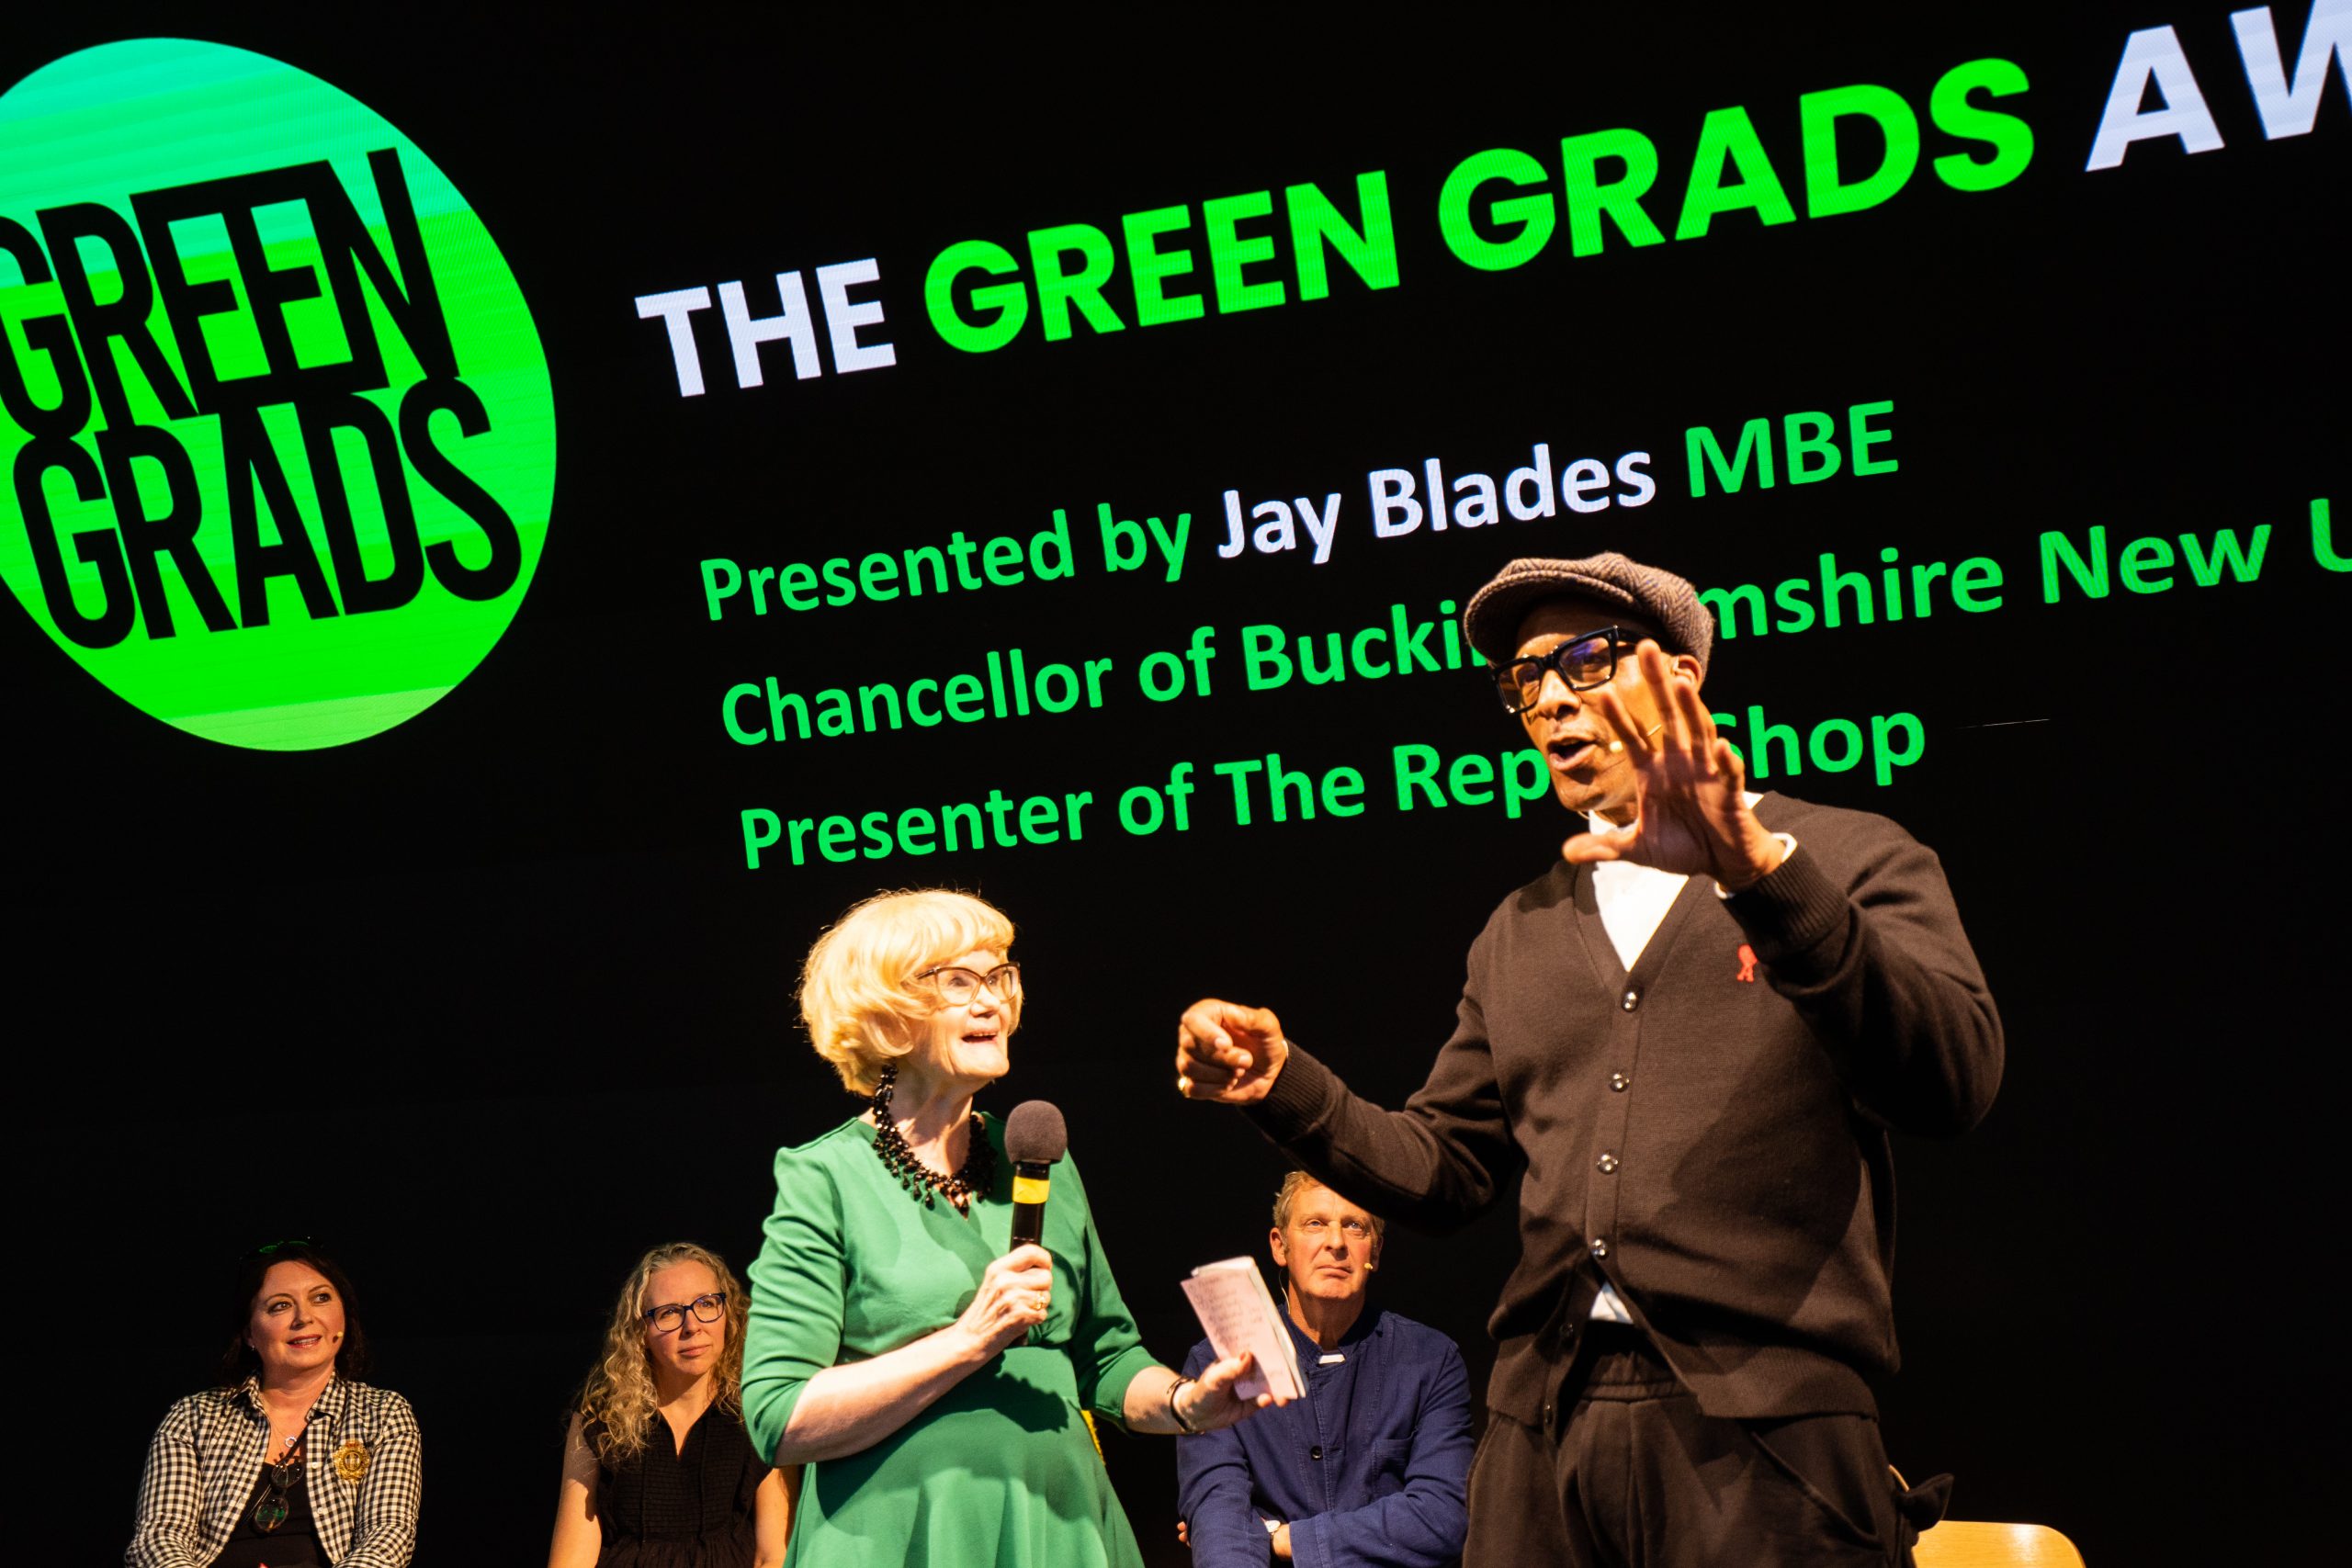 Barbara Chandler & Jay Blades Mbe at Green Grads Award show. Photo Barbara Chander